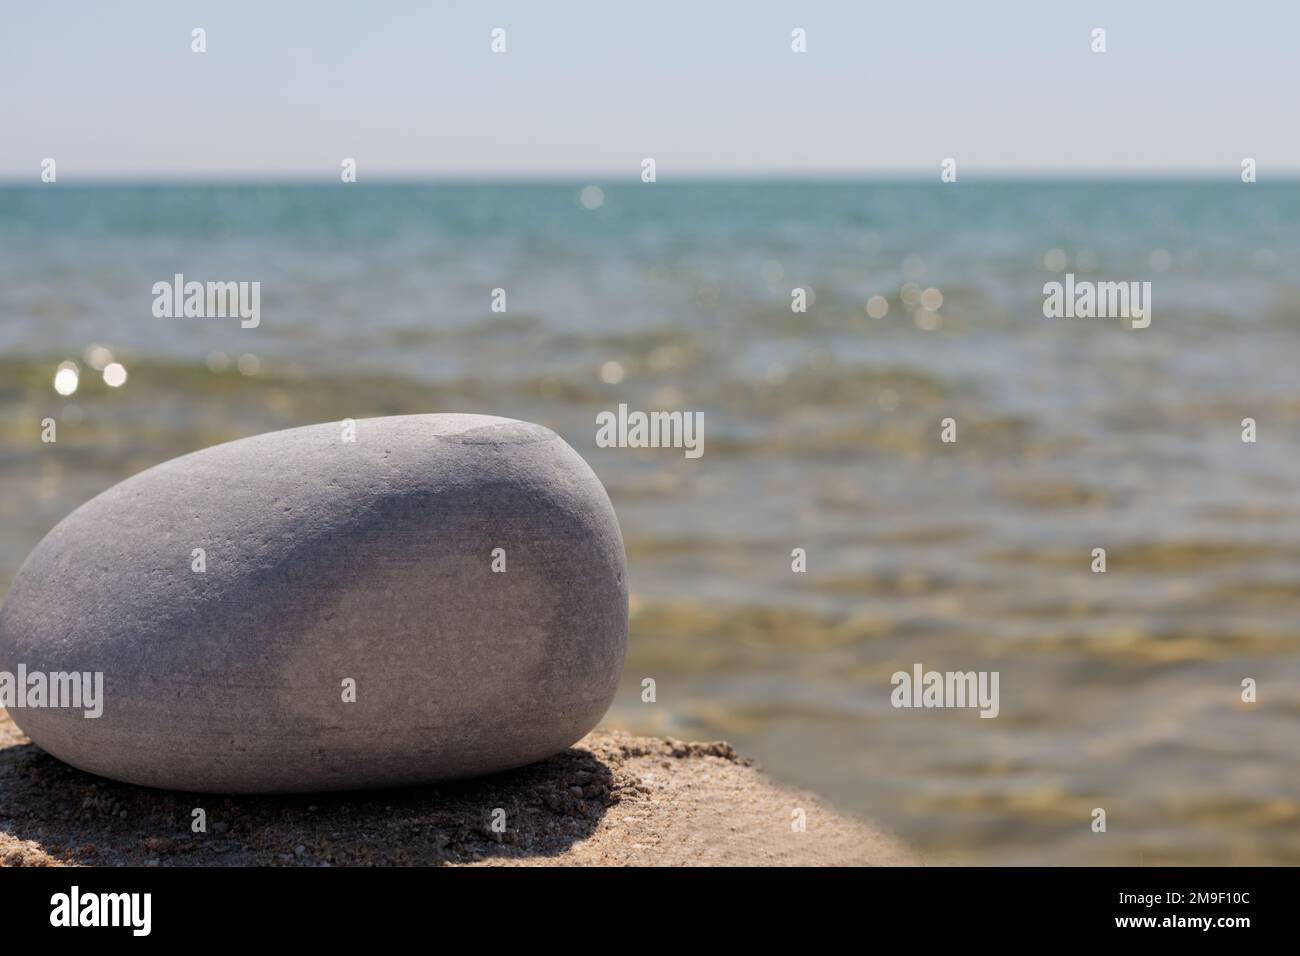 Eine leere Produktvorlage auf einem steinernen, felsigen Sockel vor einem Meereshintergrund, die eine sommerliche Atmosphäre für Modell- oder Werbezwecke schafft. Stockfoto